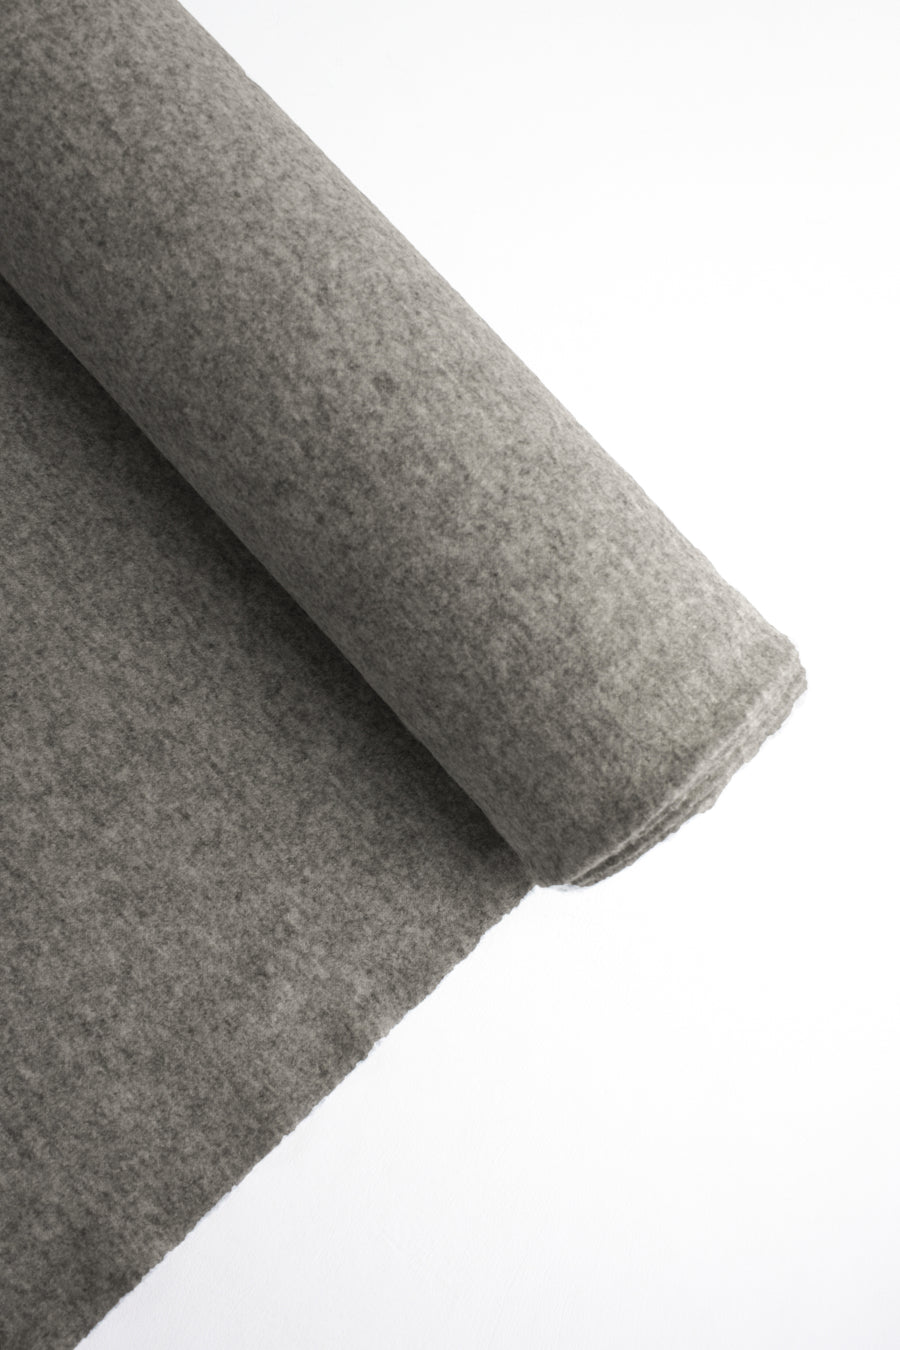 Boiled Wool #1 | Grey